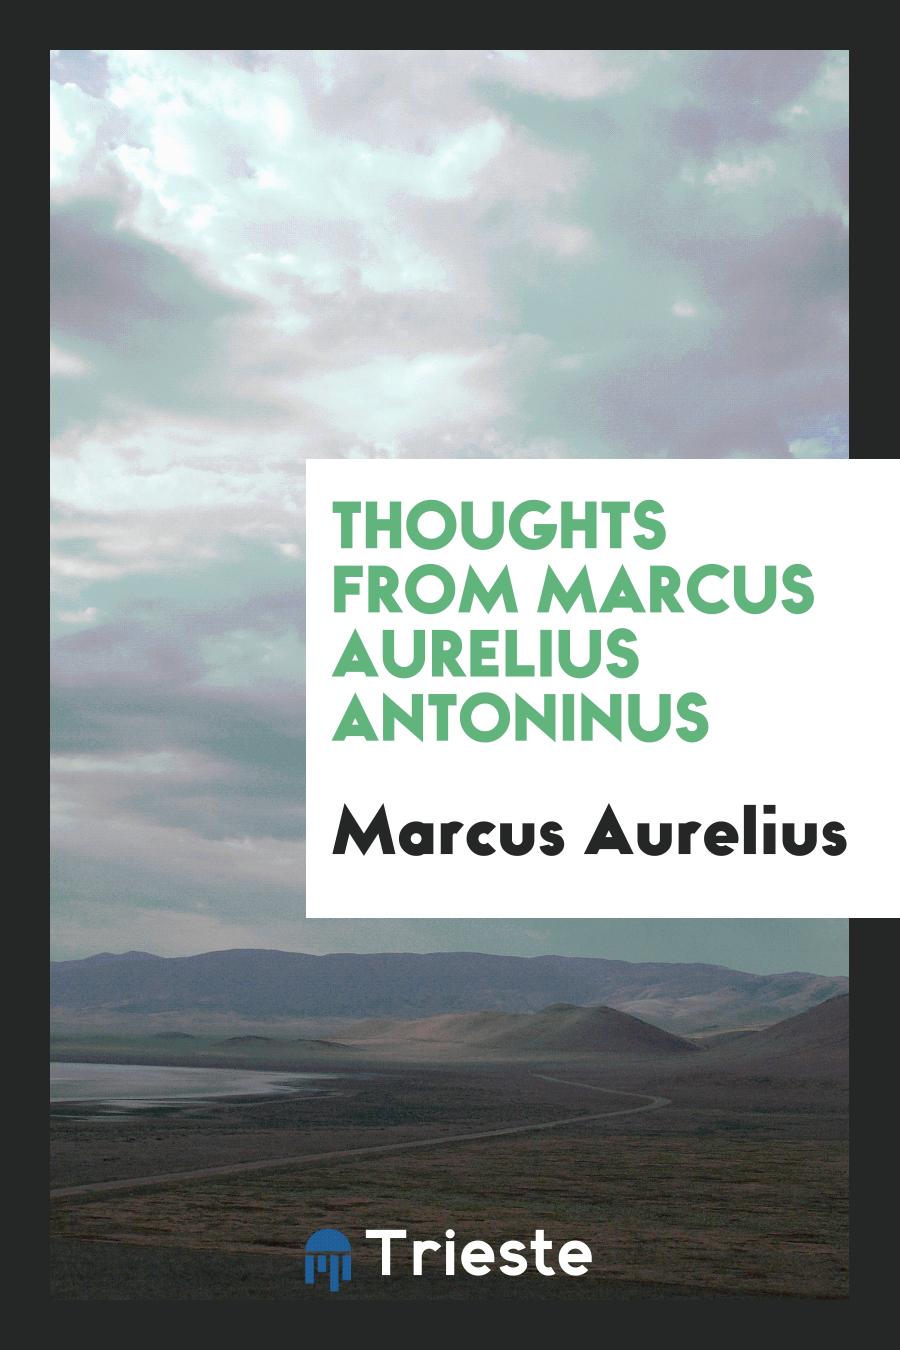 Thoughts from Marcus Aurelius Antoninus